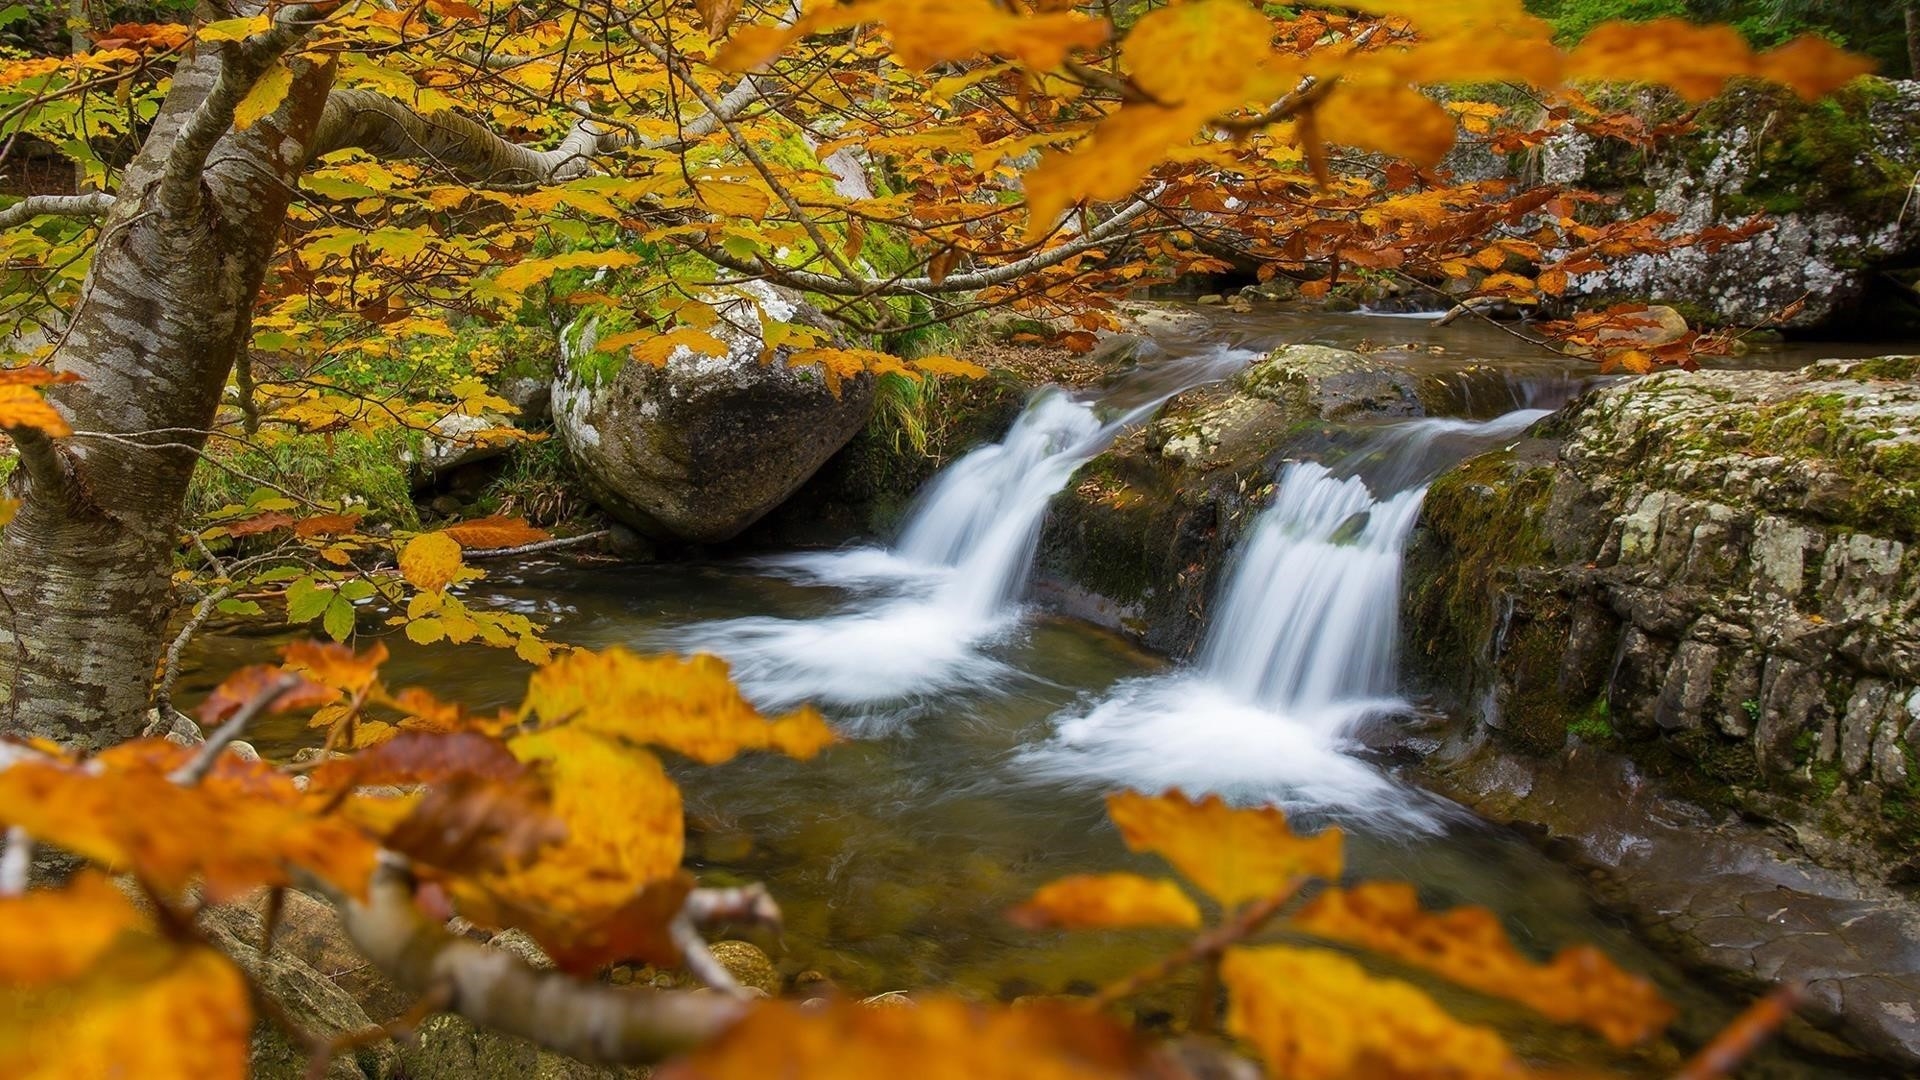 Водопады река и деревья с желтыми листьями во время осенней природы обои скачать